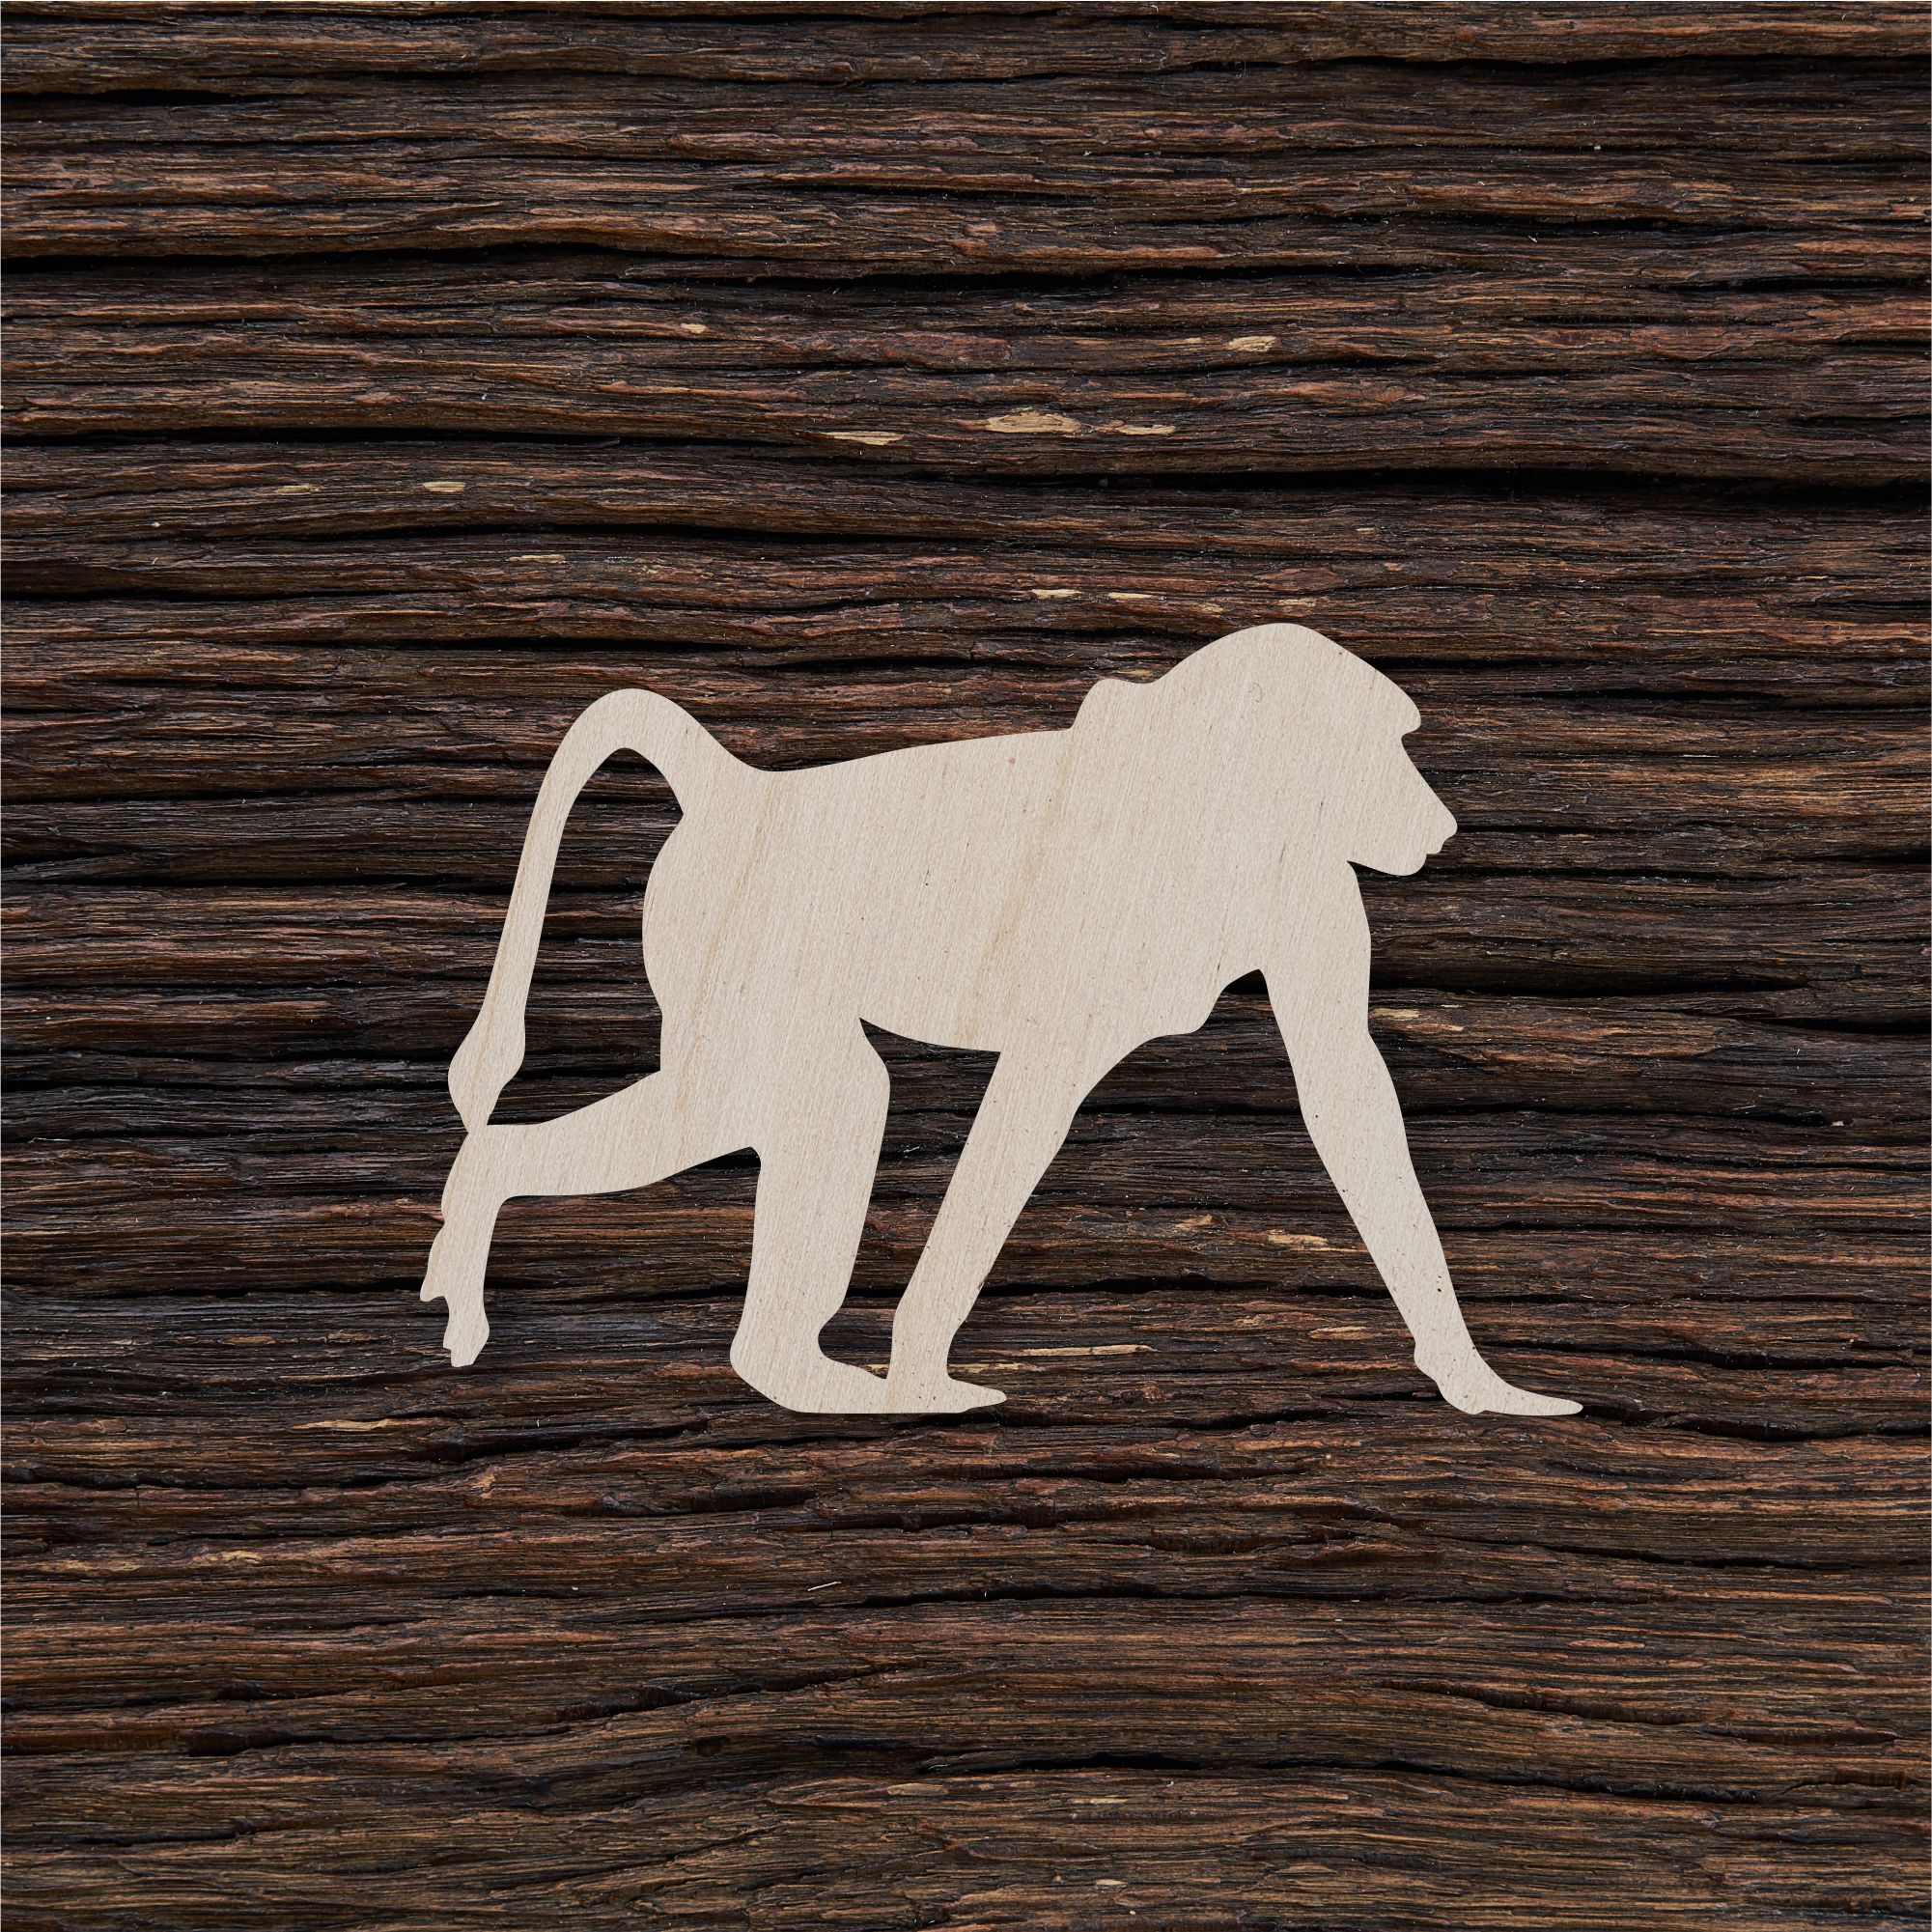 6Beždžionė babuinas - medinis gaminys, pjautas lazeriu - dekoravimui ir dažymui